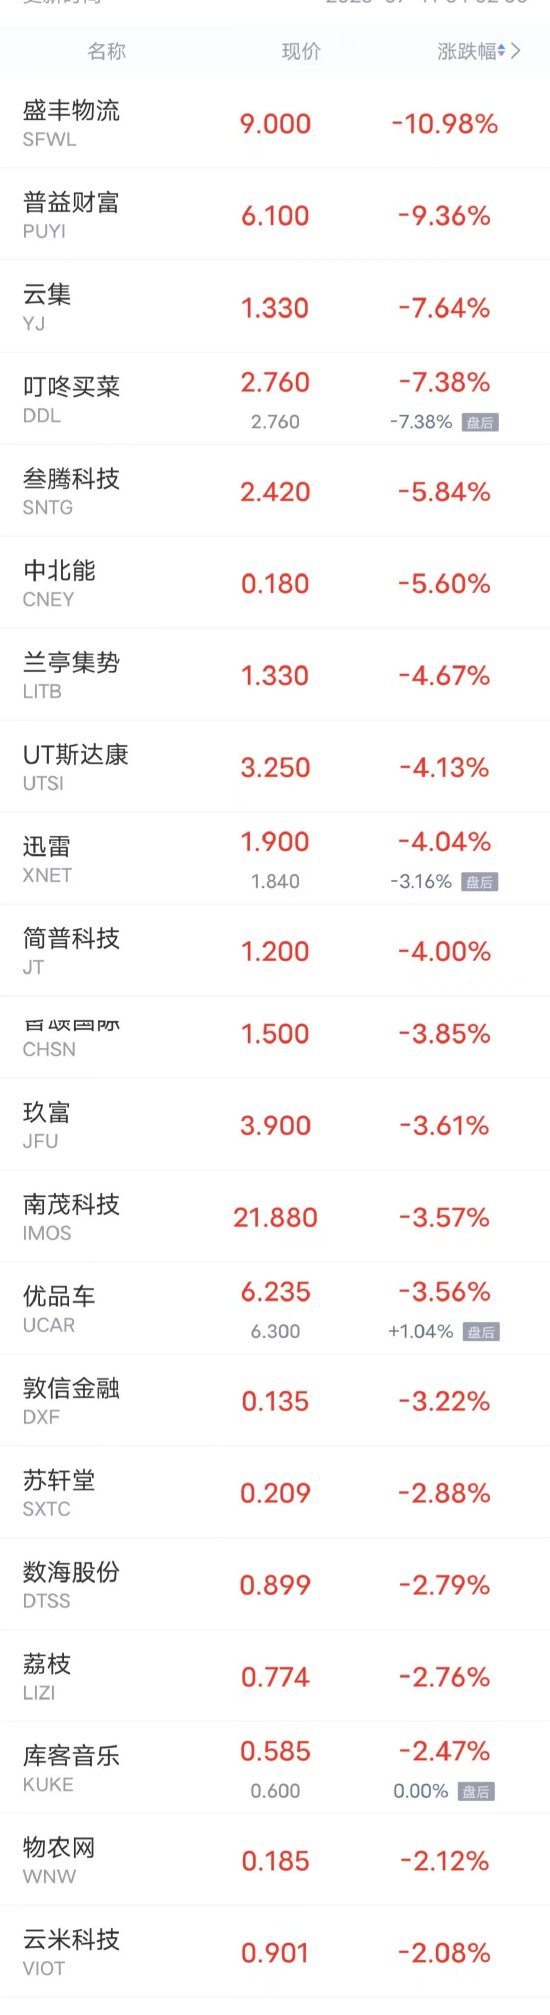 周一热门中概股多数上涨 秦淮数据涨超12% 蔚来涨超7%